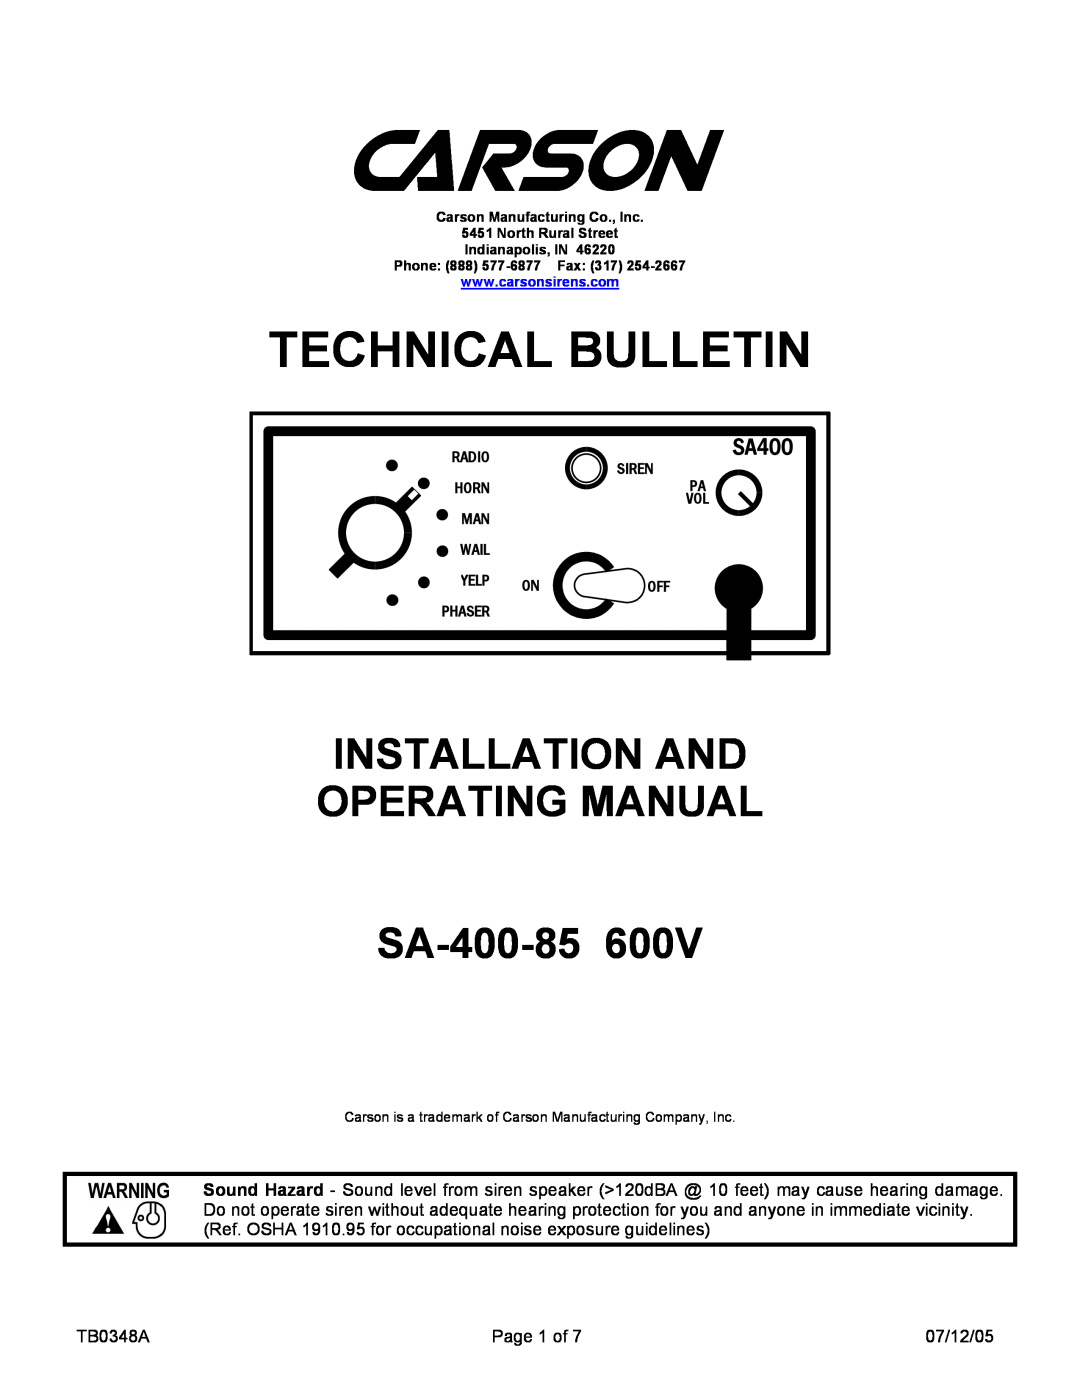 Pelco manual Technical Bulletin, INSTALLATION AND OPERATING MANUAL SA-400-85600V, SA400 